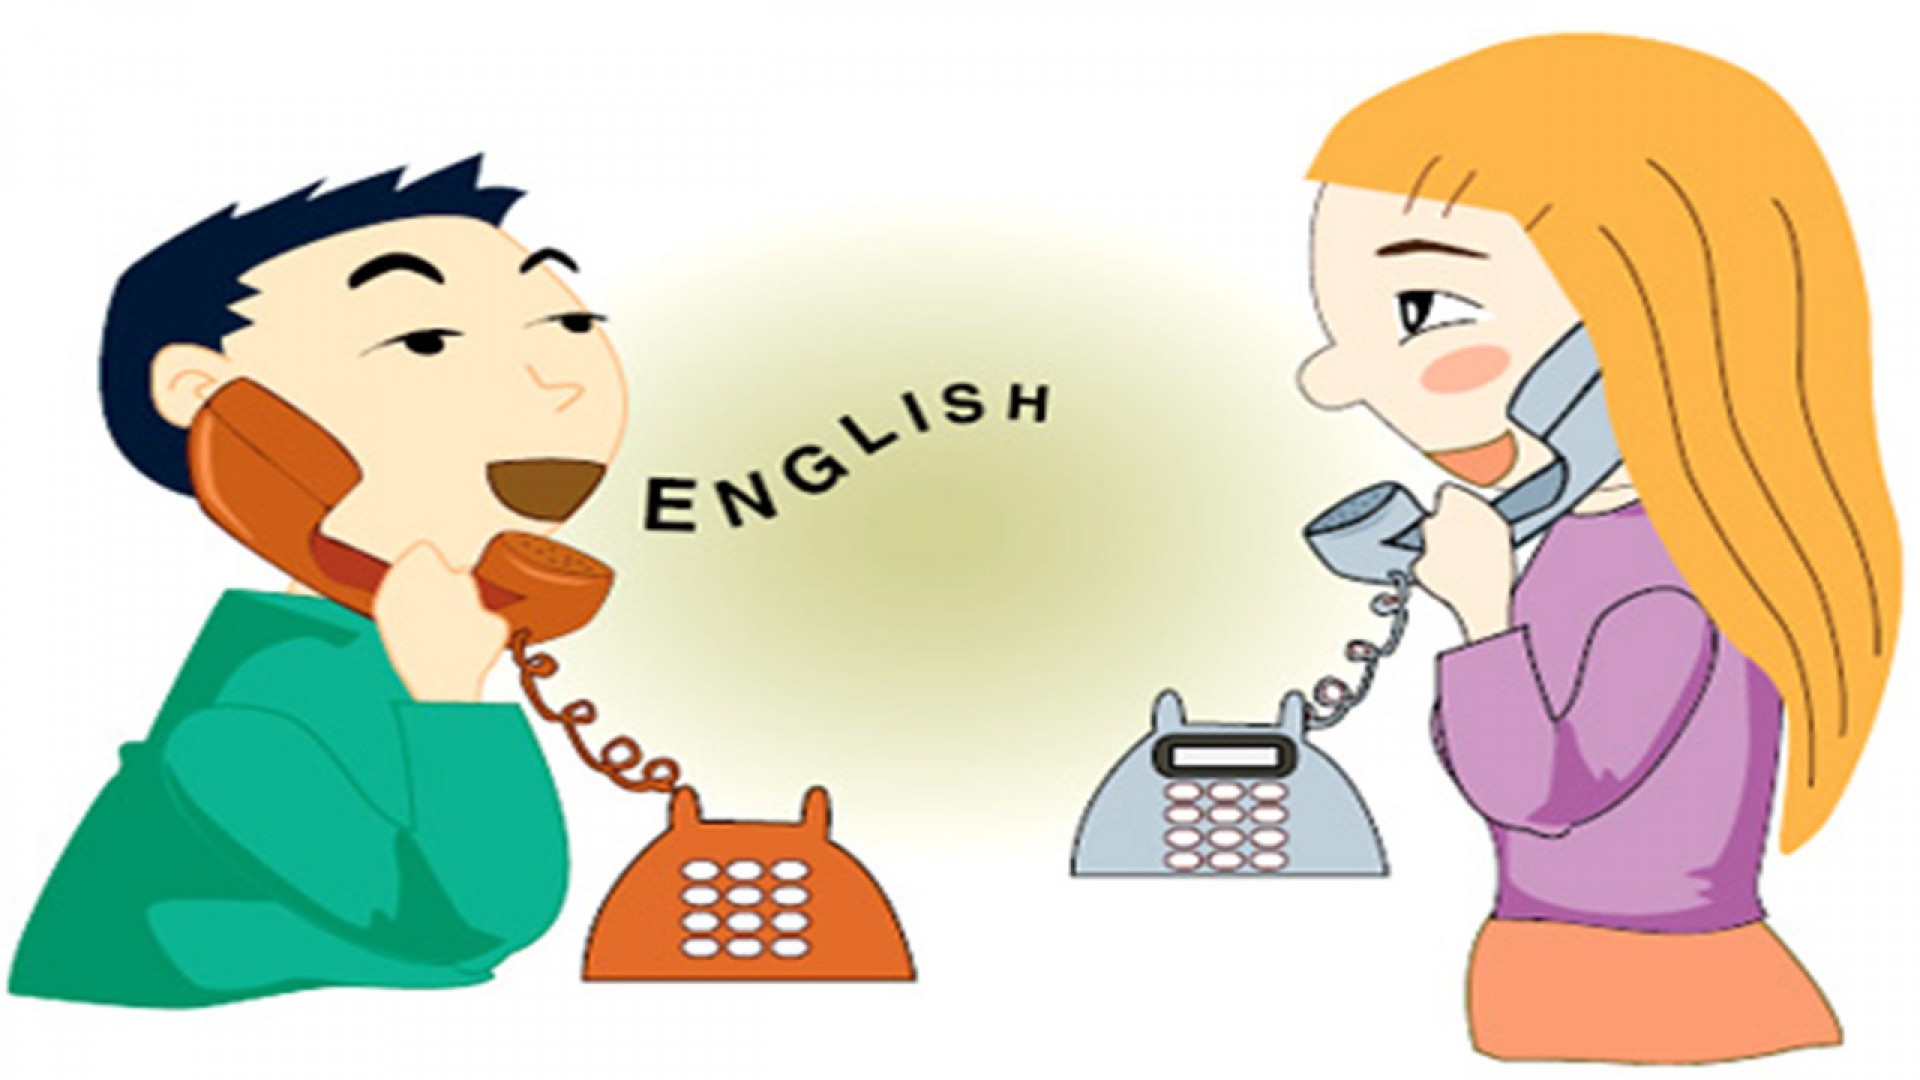 Những đoạn hội thoại tiếng Anh theo chủ đề du lịch để dùng dịp Lễ, Tết | Edu2Review